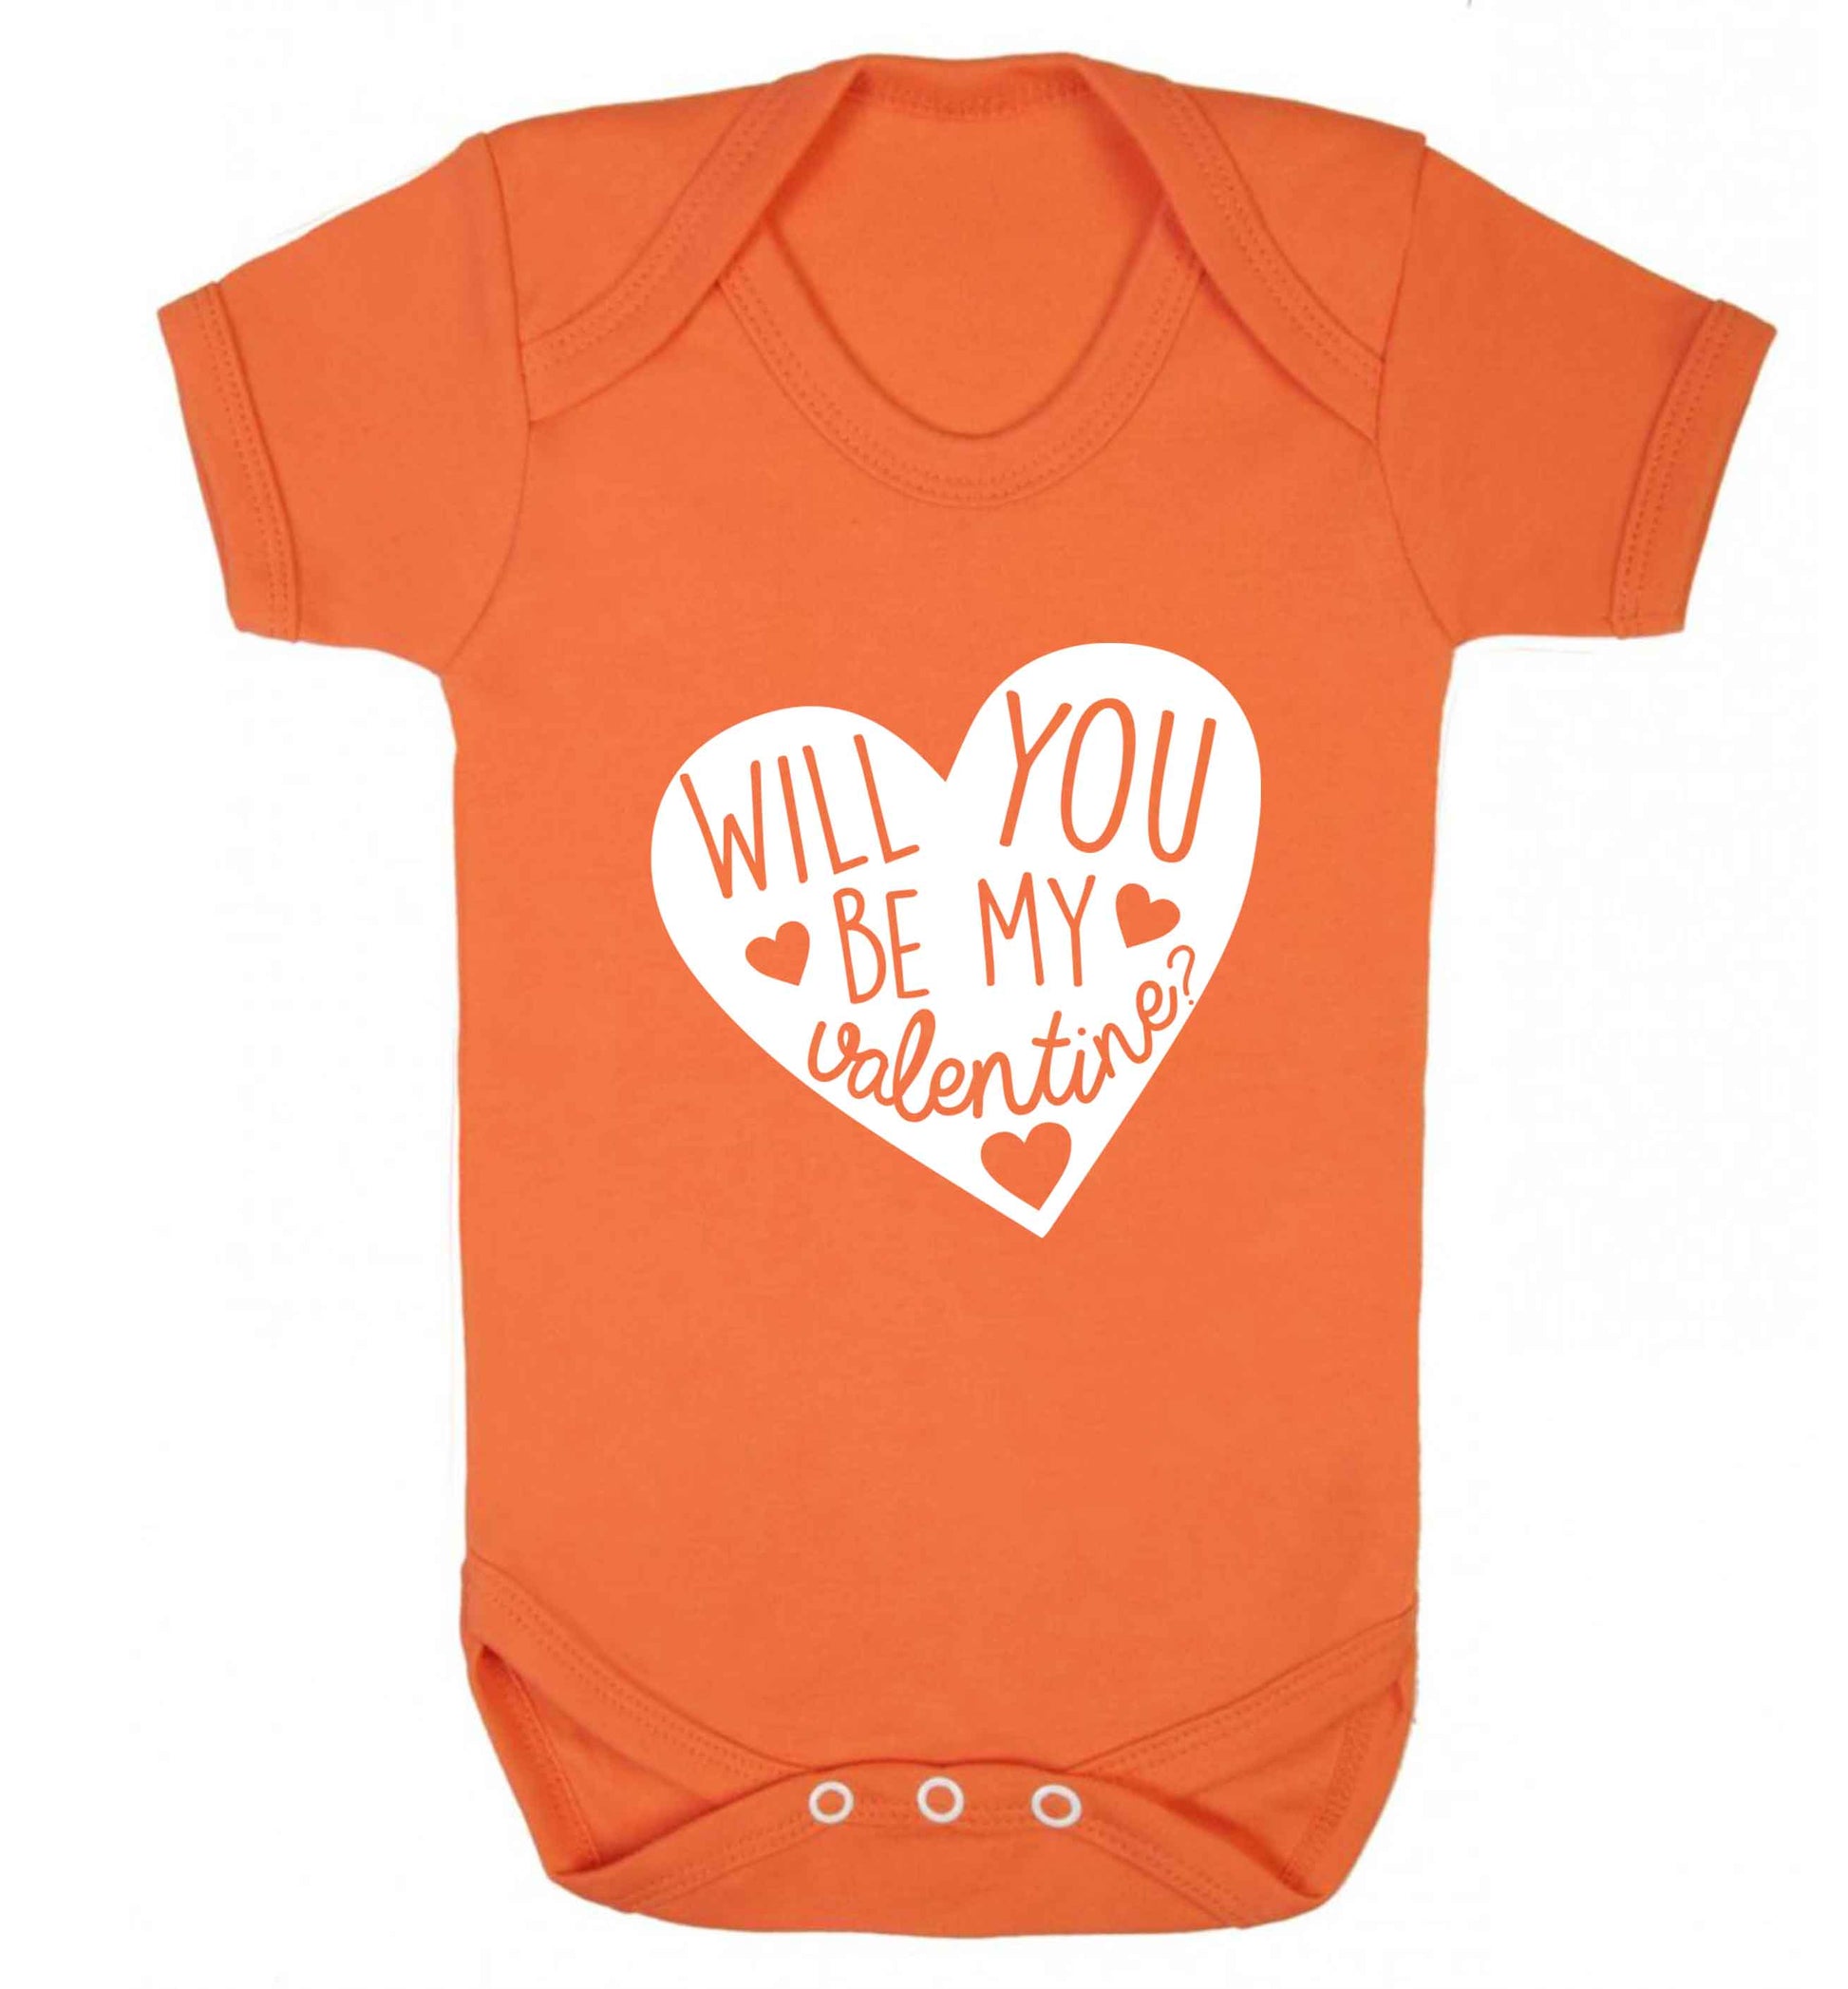 Will you be my valentine? baby vest orange 18-24 months